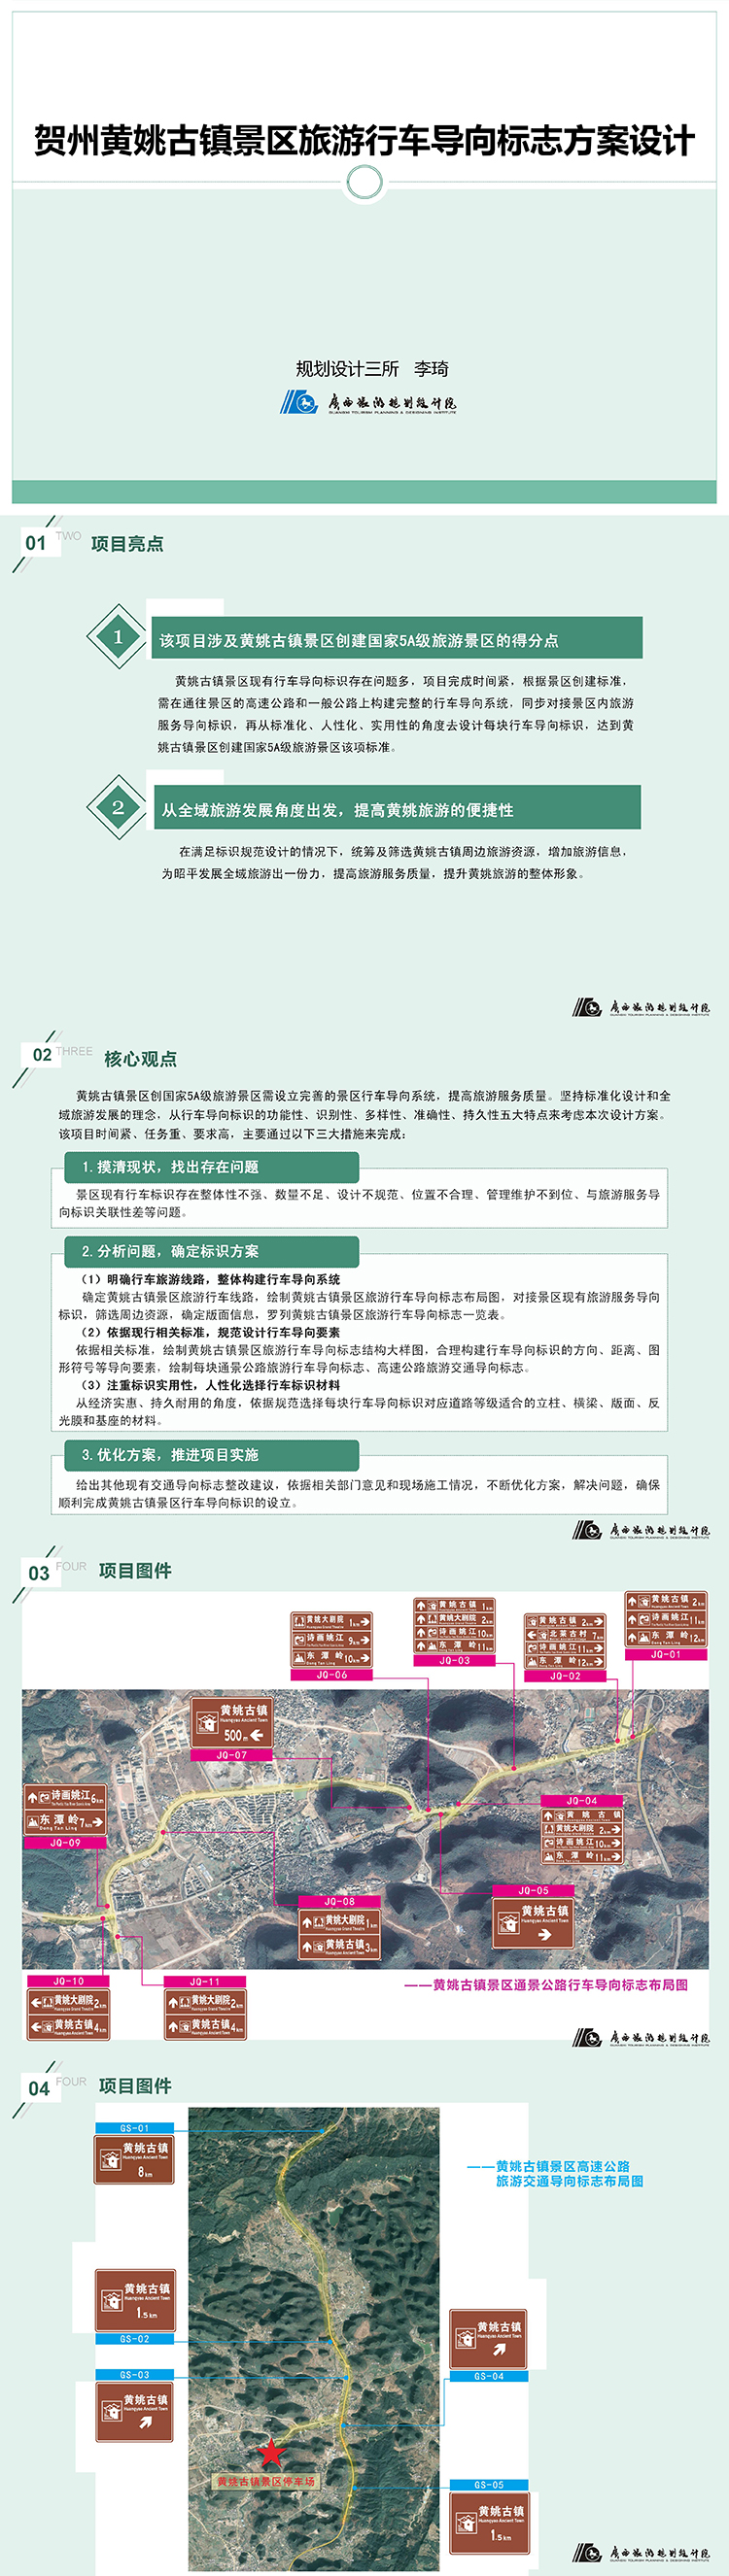 黄姚古镇造景旅行行车导向系统方案设计（项目亮点总结）李琦2022.2.18 - 副本.jpg